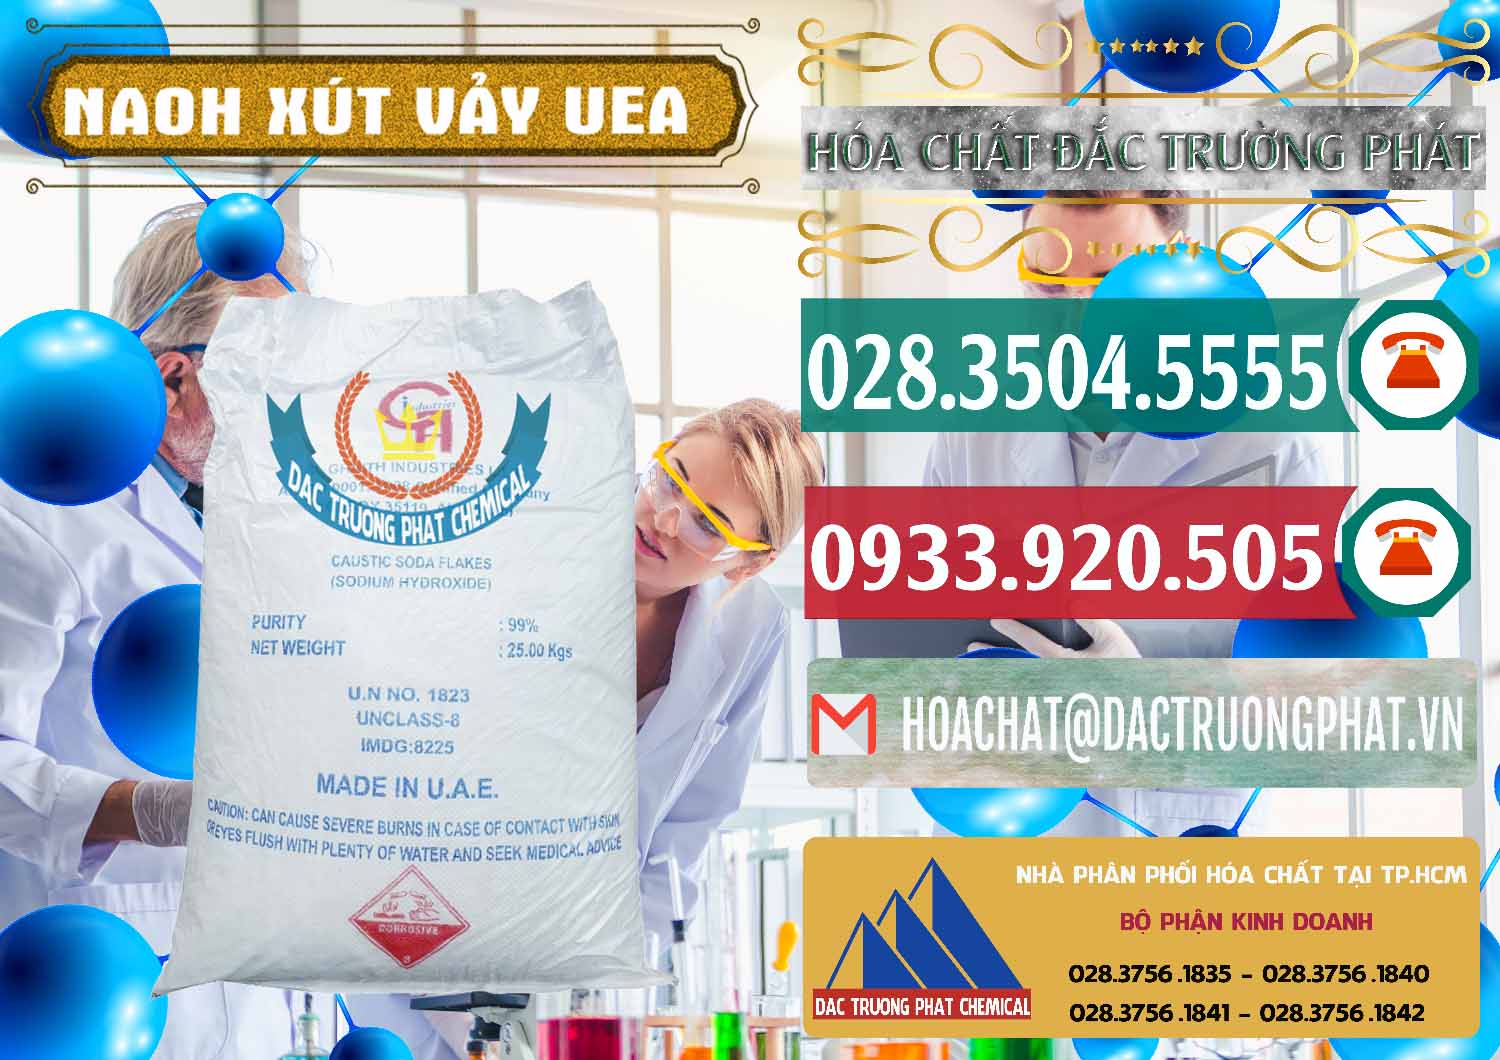 Nơi chuyên cung ứng & bán Xút Vảy - NaOH Vảy UAE Iran - 0432 - Chuyên bán và cung cấp hóa chất tại TP.HCM - muabanhoachat.vn